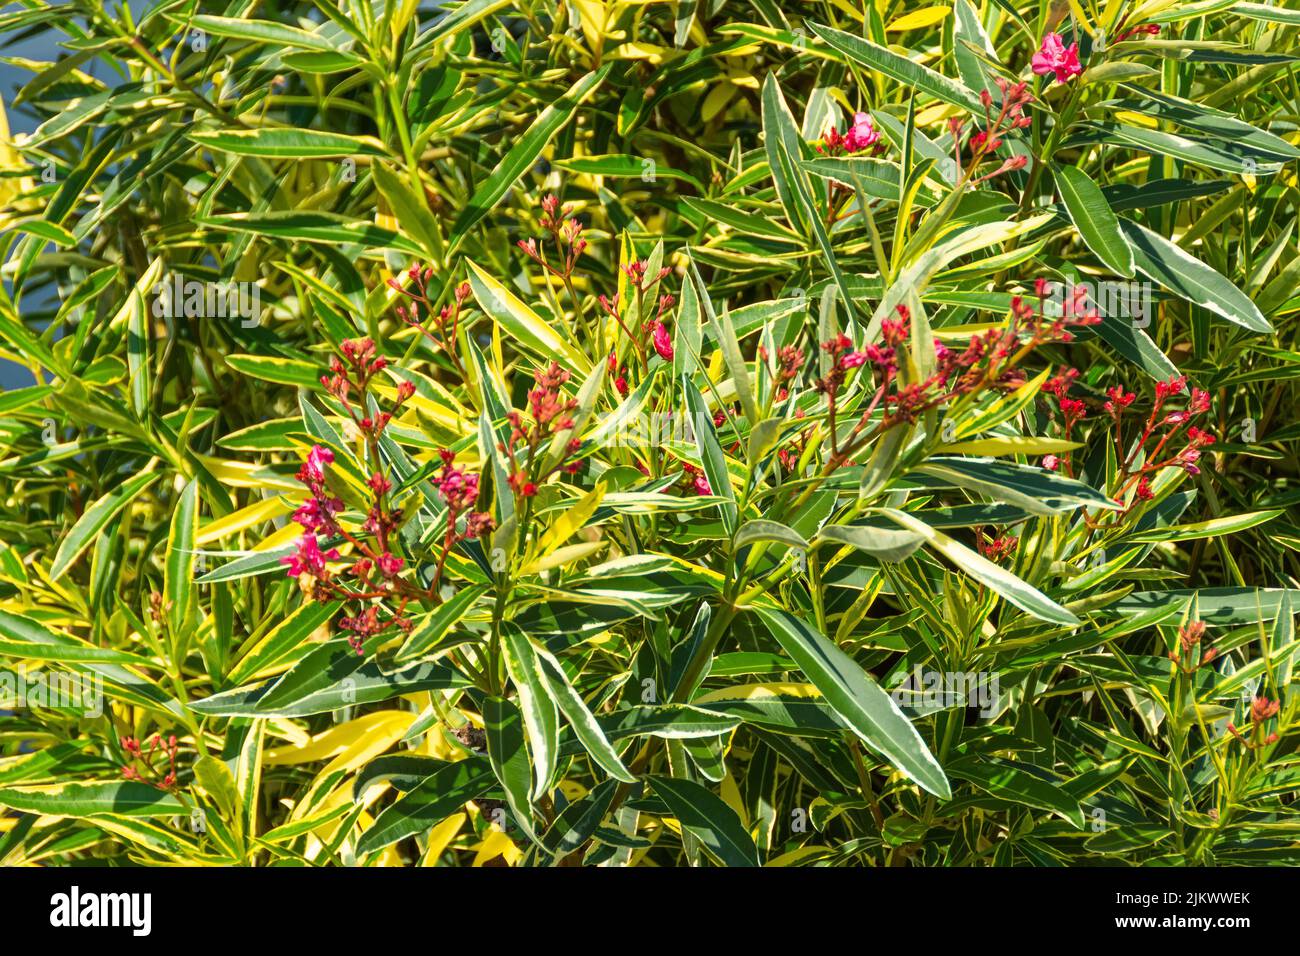 Arbusto de adelfa con hojas variegadas de color amarillo-verde. Hermosa planta venenosa con flores de color rosa brillante Foto de stock